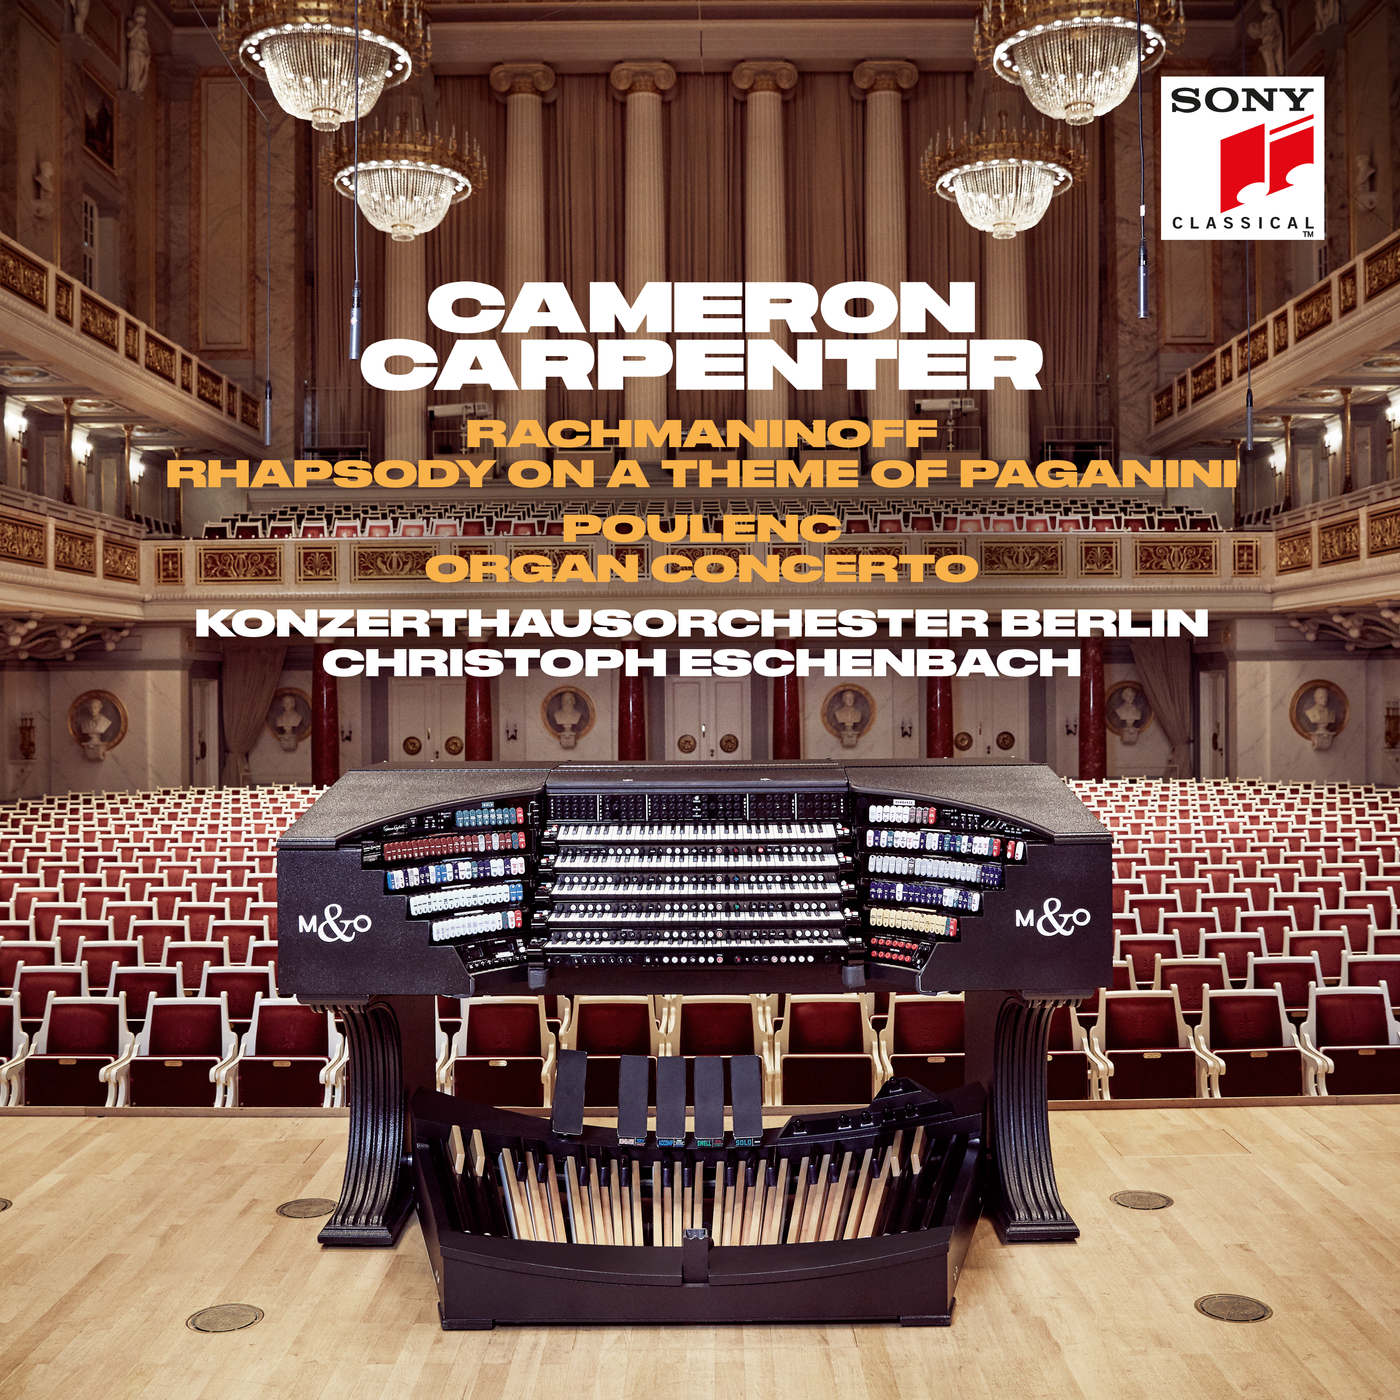 Concerto for Organ, Strings & Timpani in G Minor, FP 93:III. Subito Andante Moderato